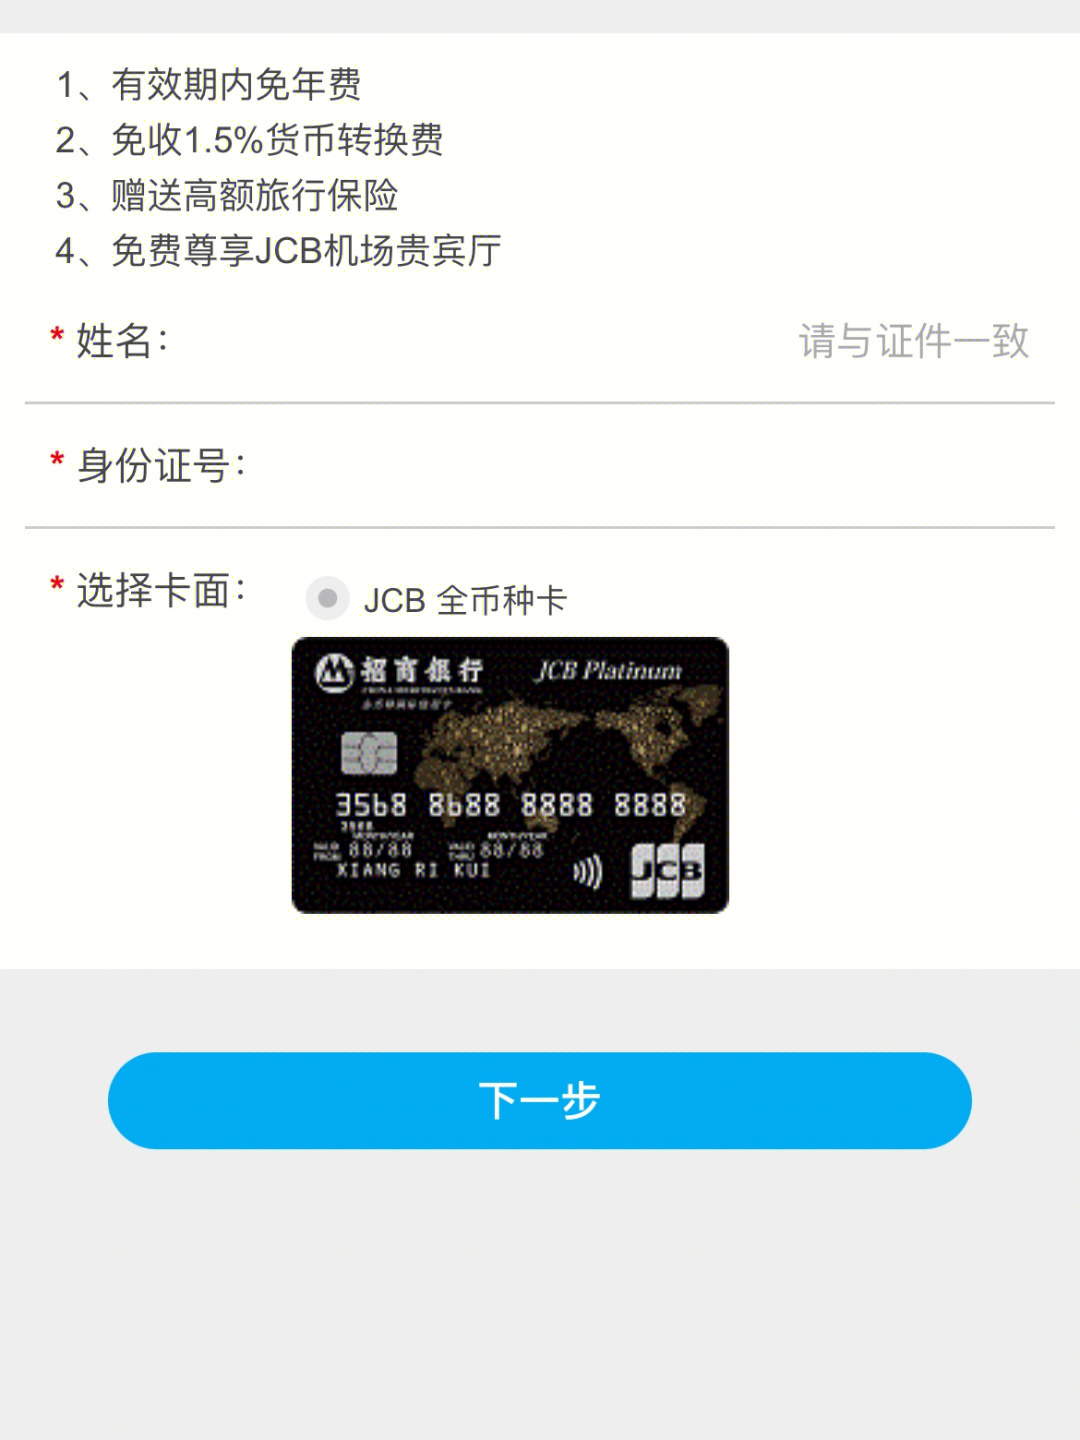 求助日本留学信用卡jcbvisamaster